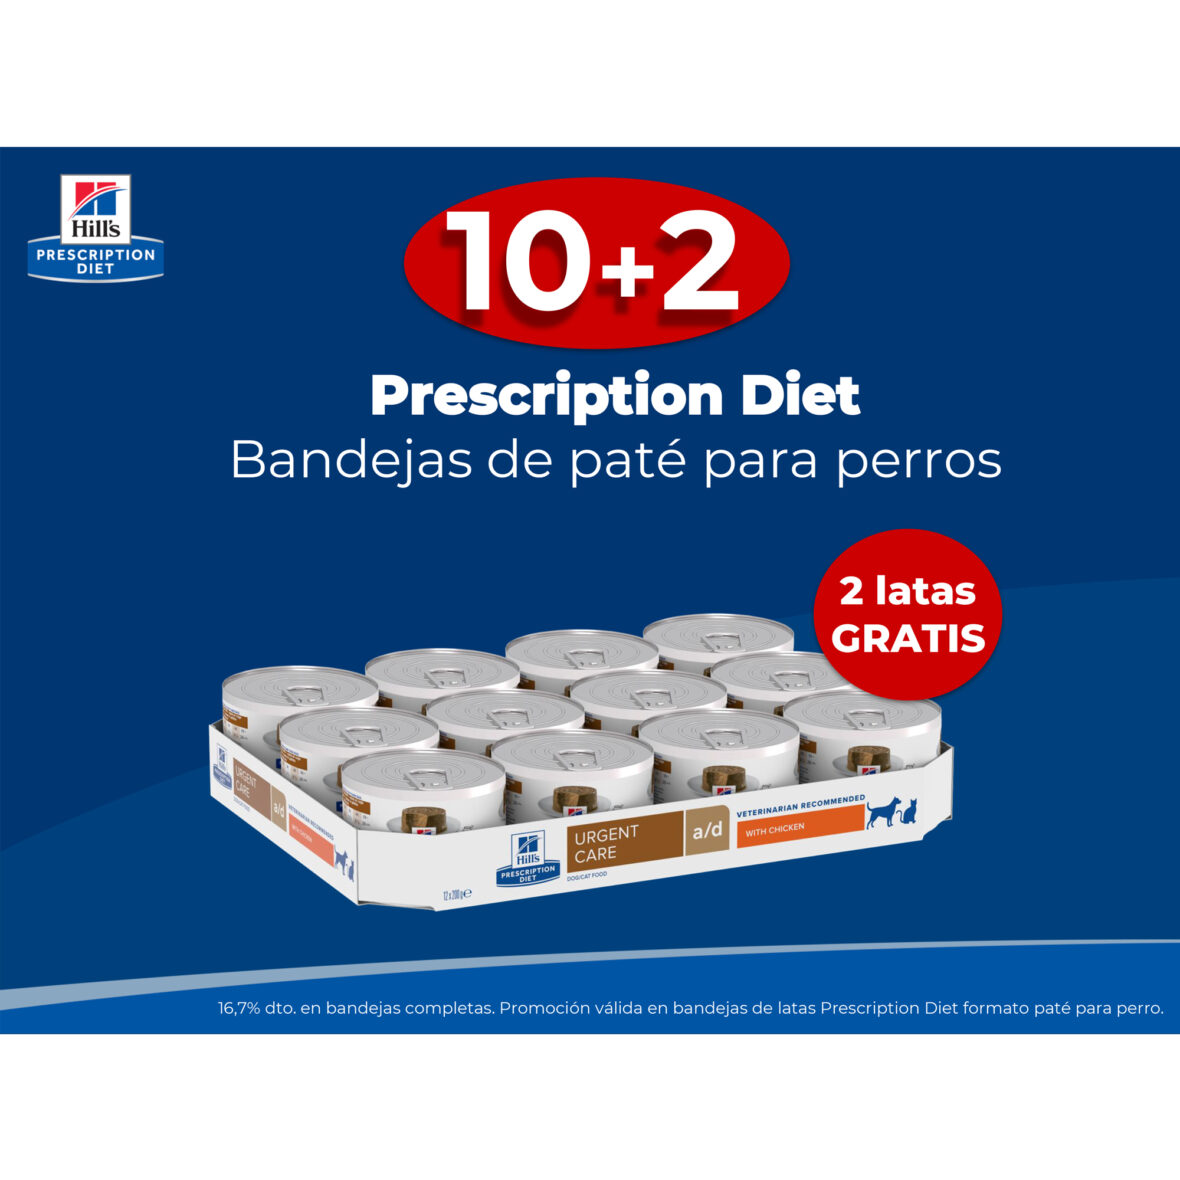 10+2 Prescription Diet Bandejas de paté para perros